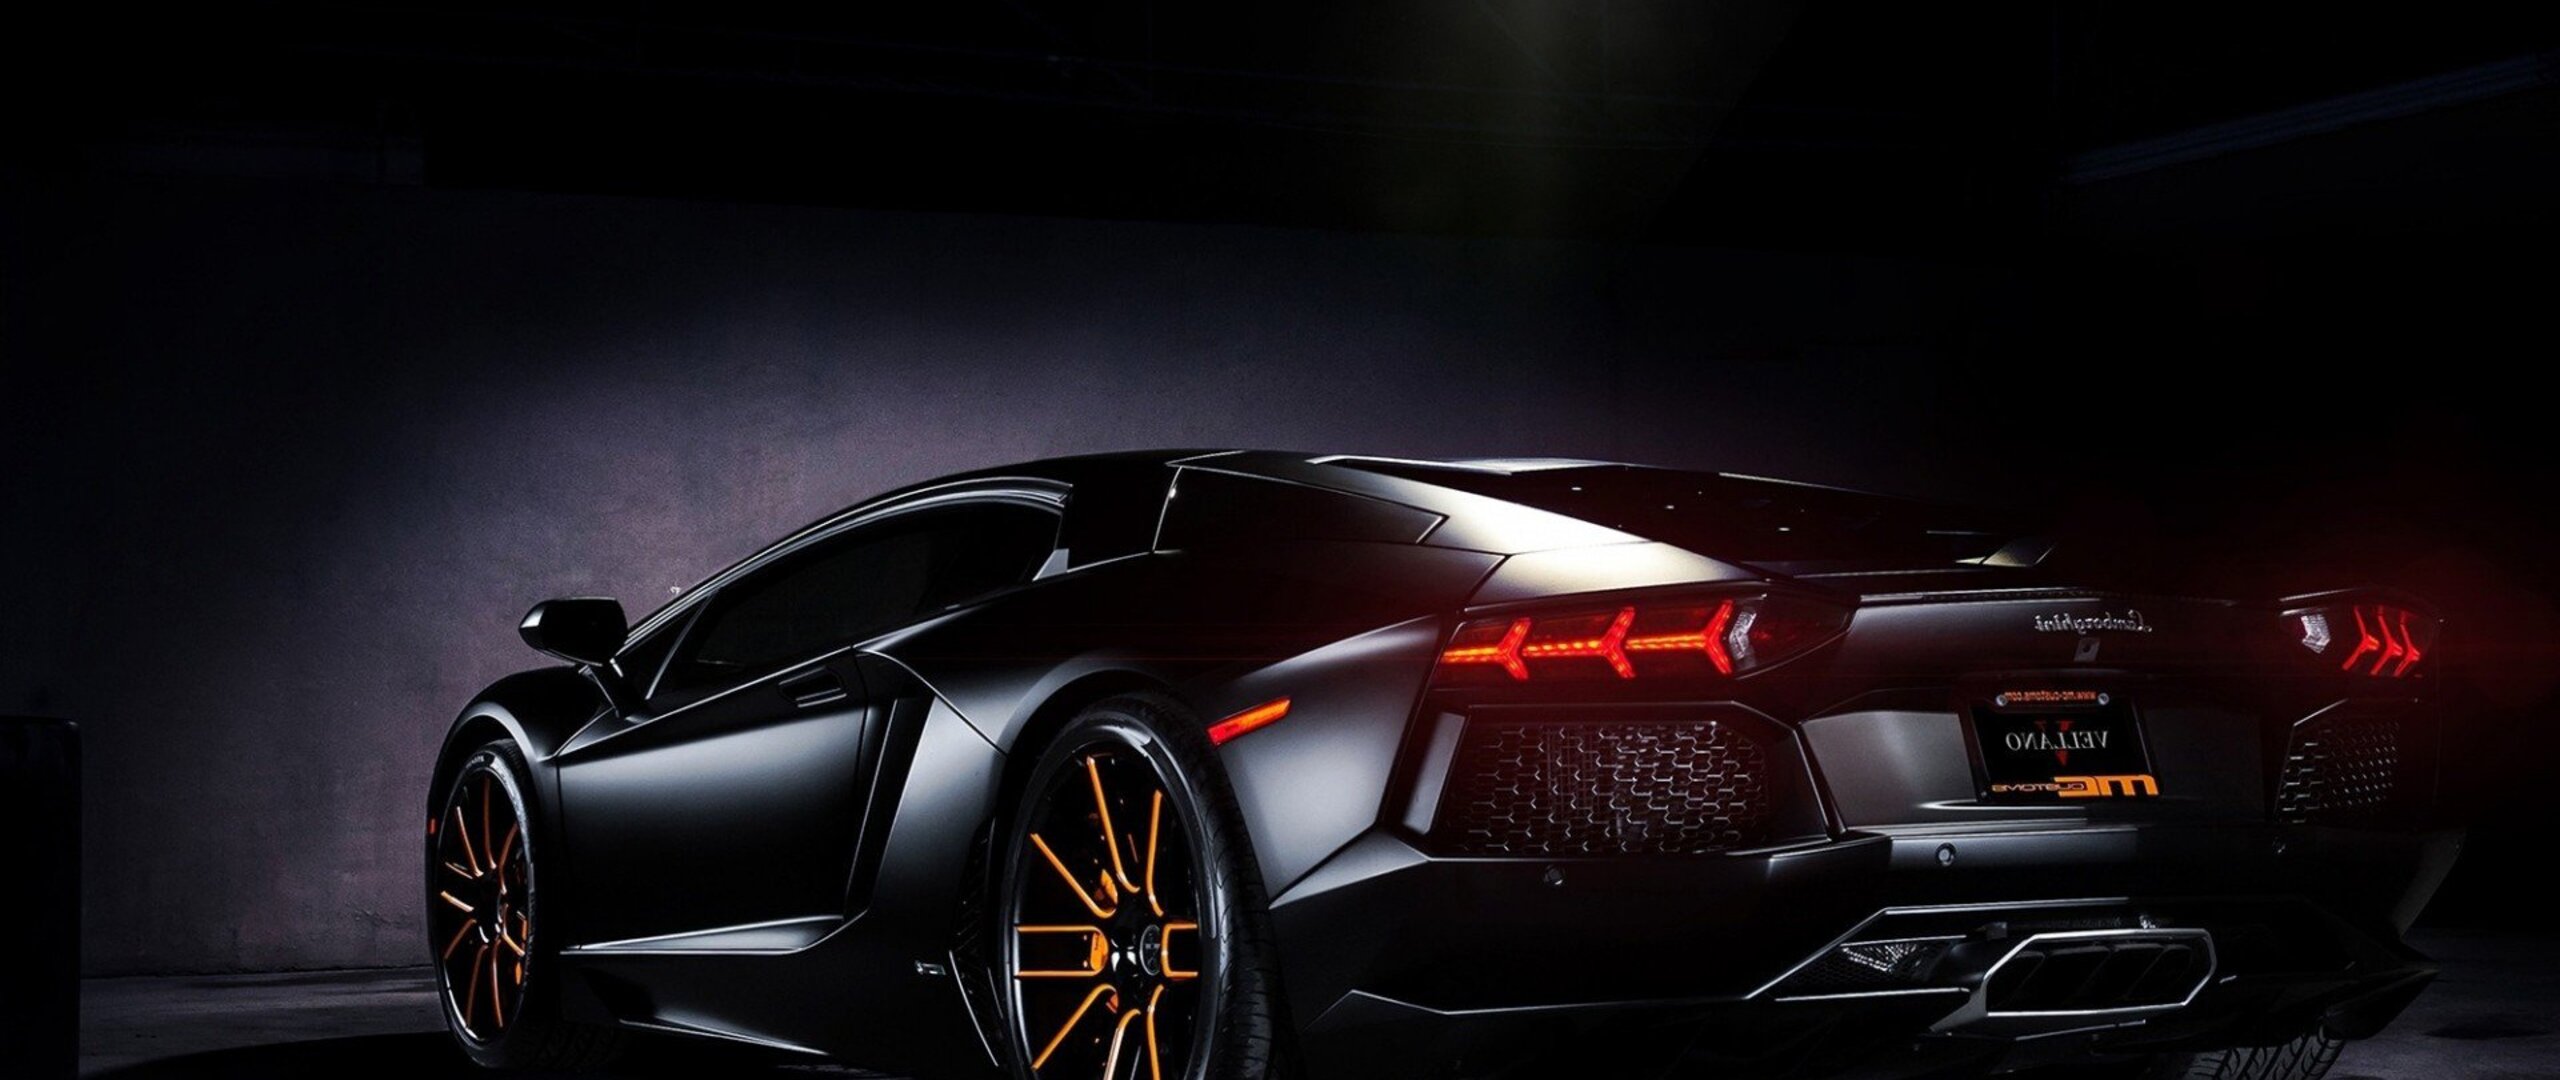 2560x1080 Lamborghini Black 2560x1080 Resolution HD 4k ...